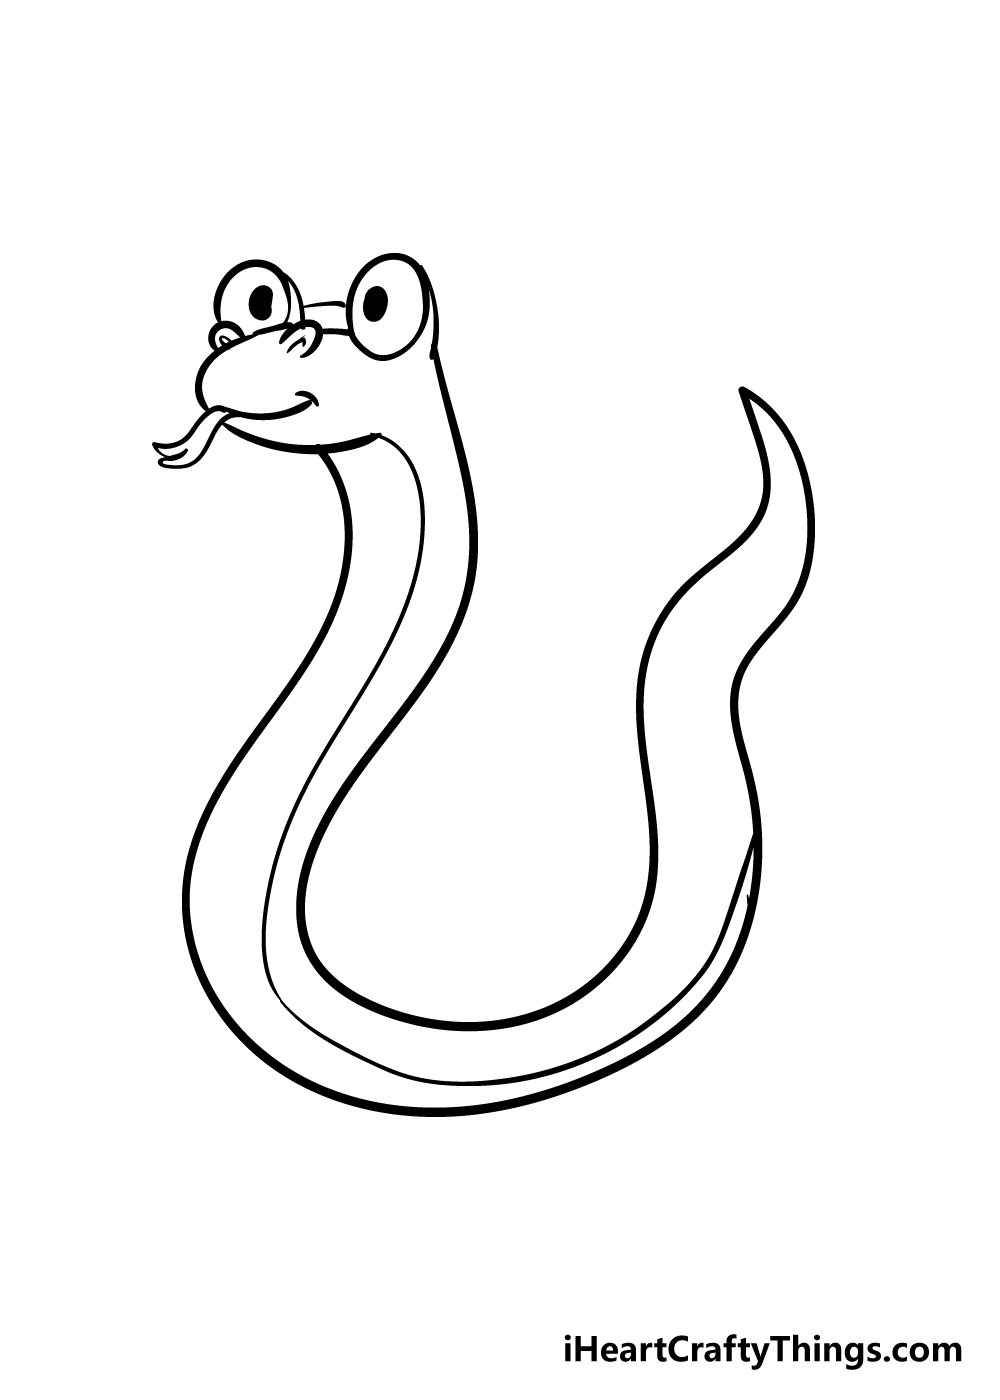 Cách vẽ con Rắn cho Bé  Draw a Snake for Kids  Vẽ Từng Nét Nhỏ for Kids   Trong video này các bé sẽ được hướng dẫn Cách vẽ con